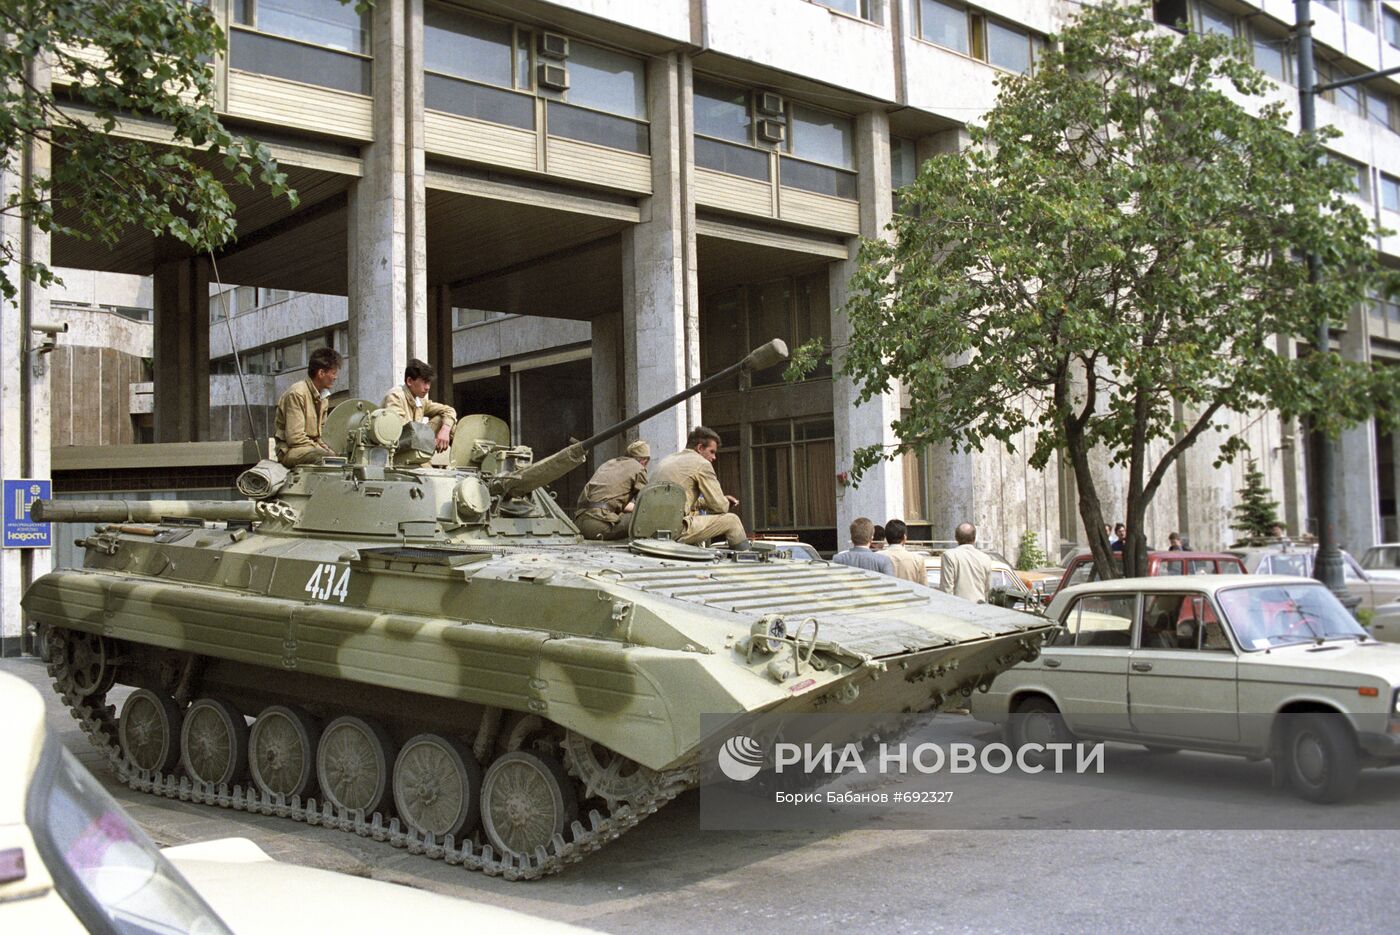 Ввод войск в Москву 19 августа 1991 года